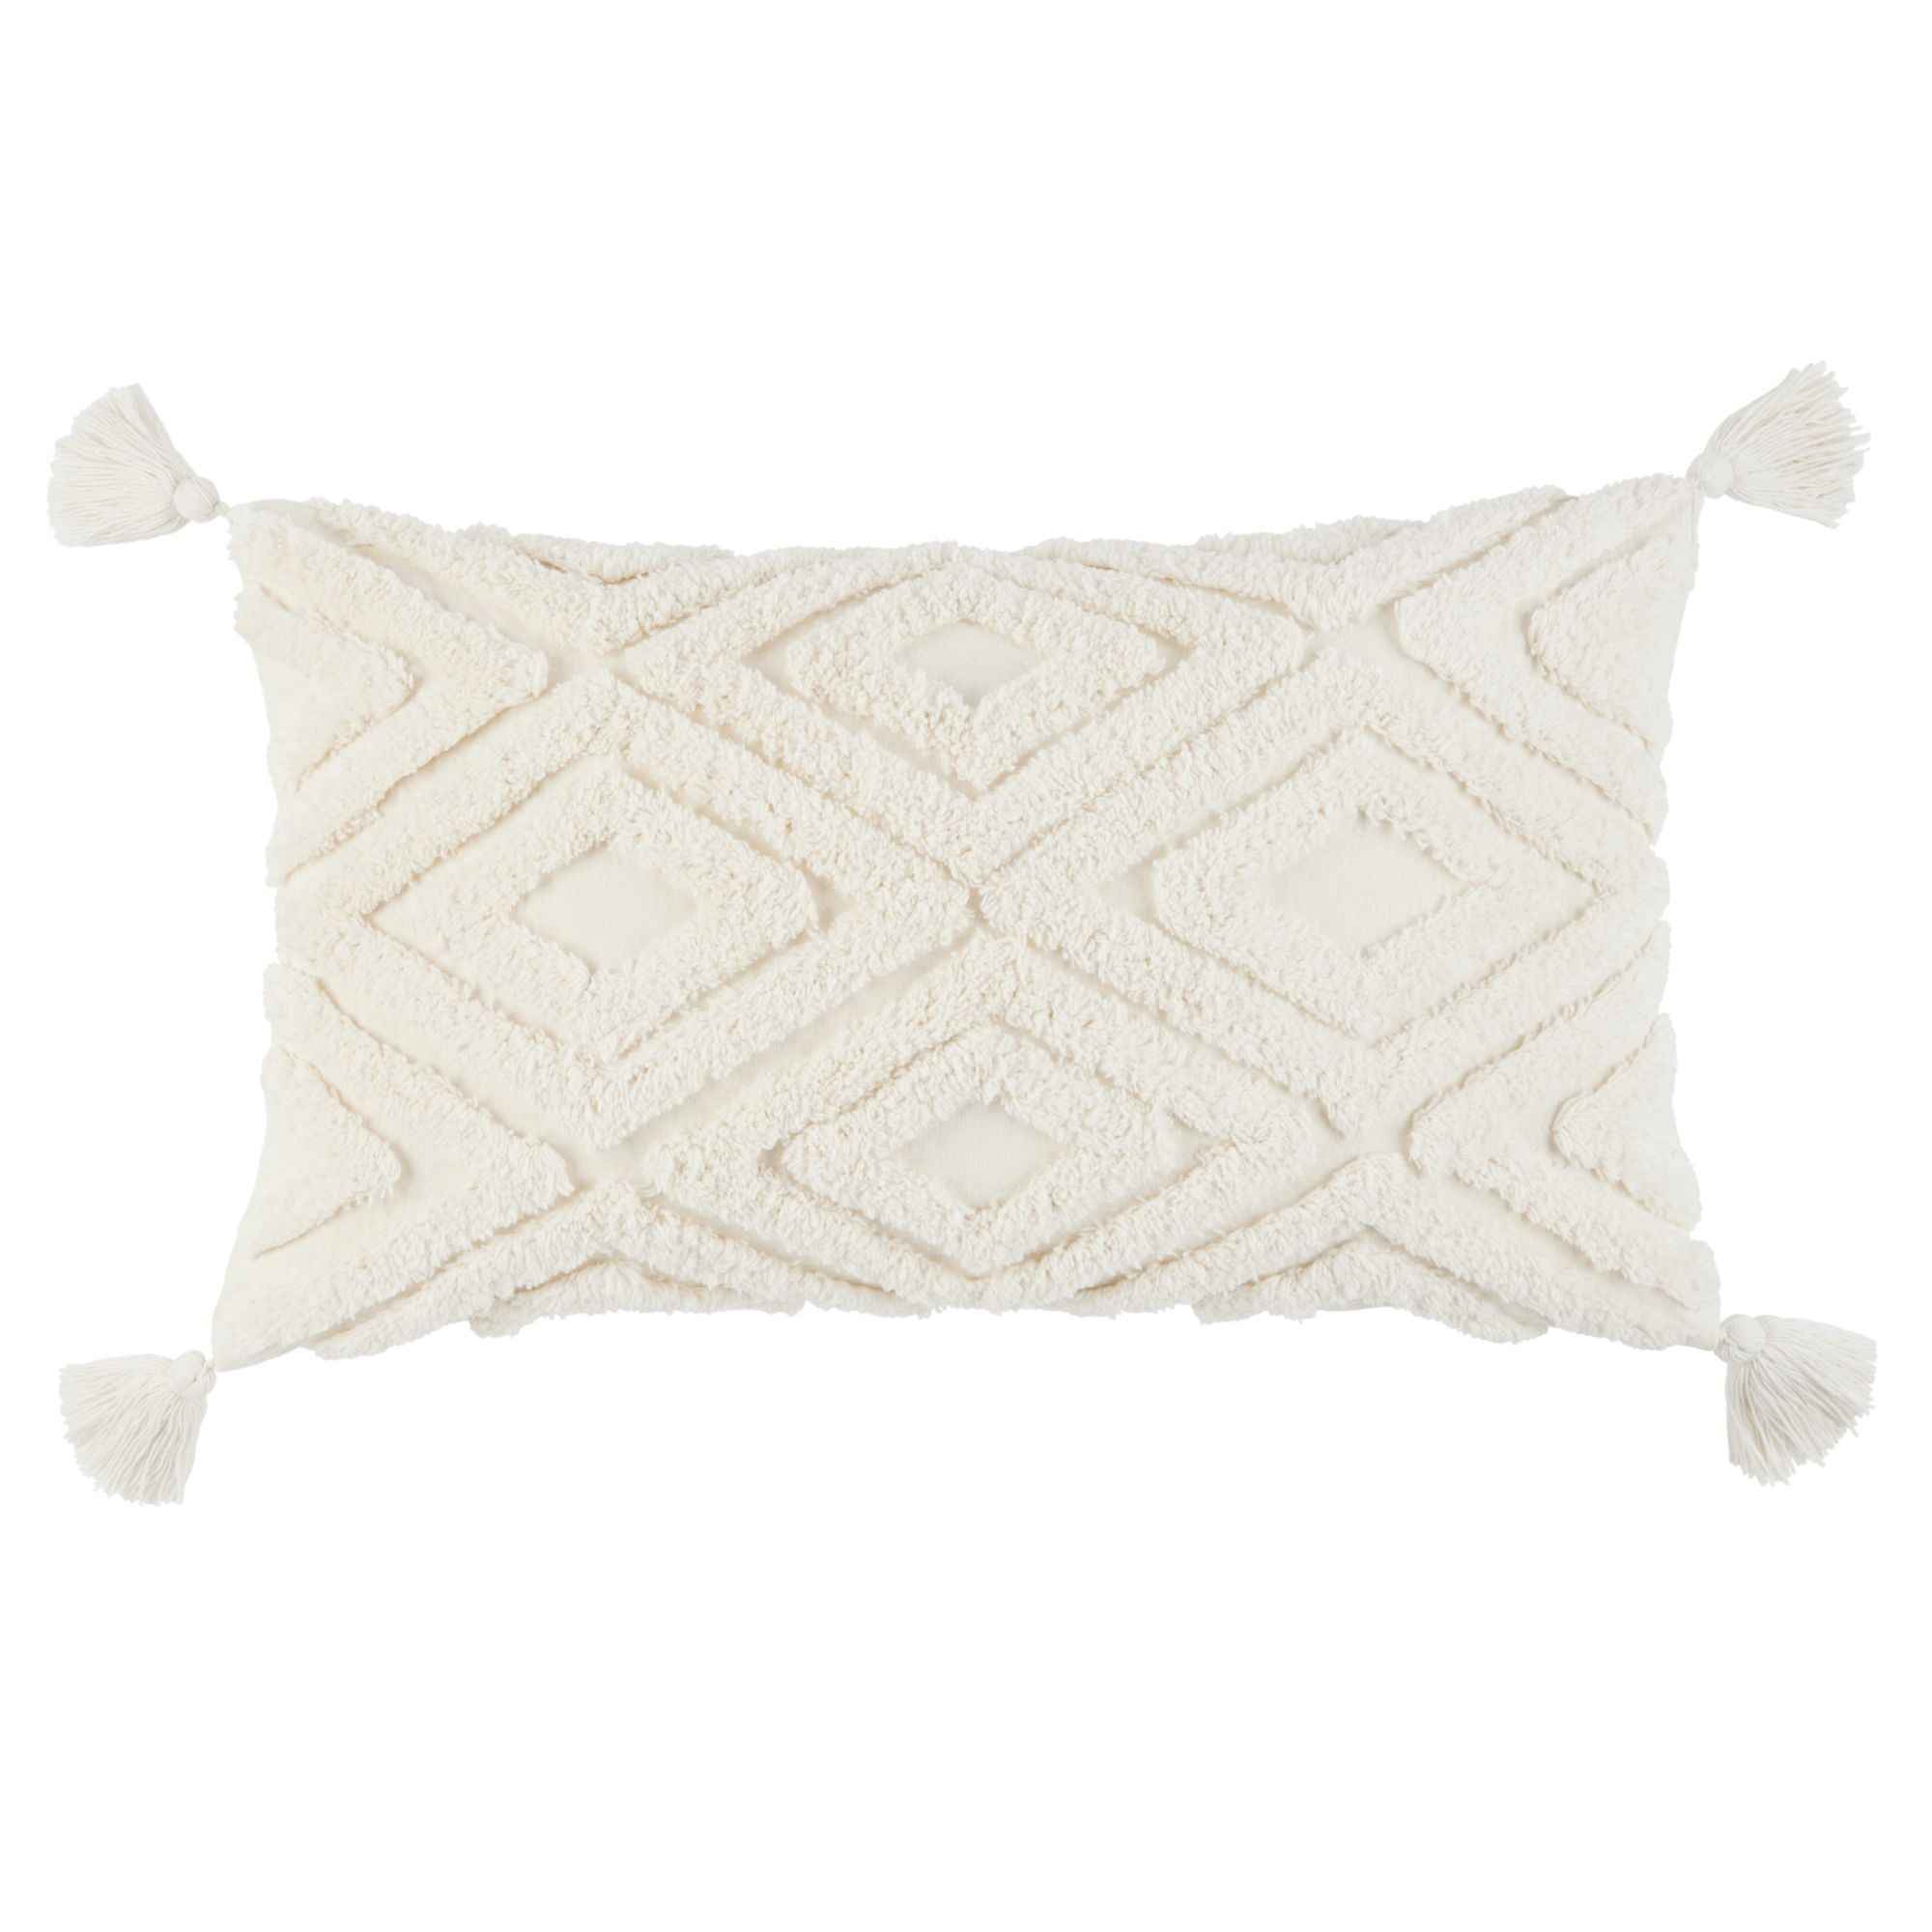 Wanda June Home Diamond Tufted Lumbar Pillow, 1 Piece, White, 14"x24" by Miranda Lambert - image 1 of 6